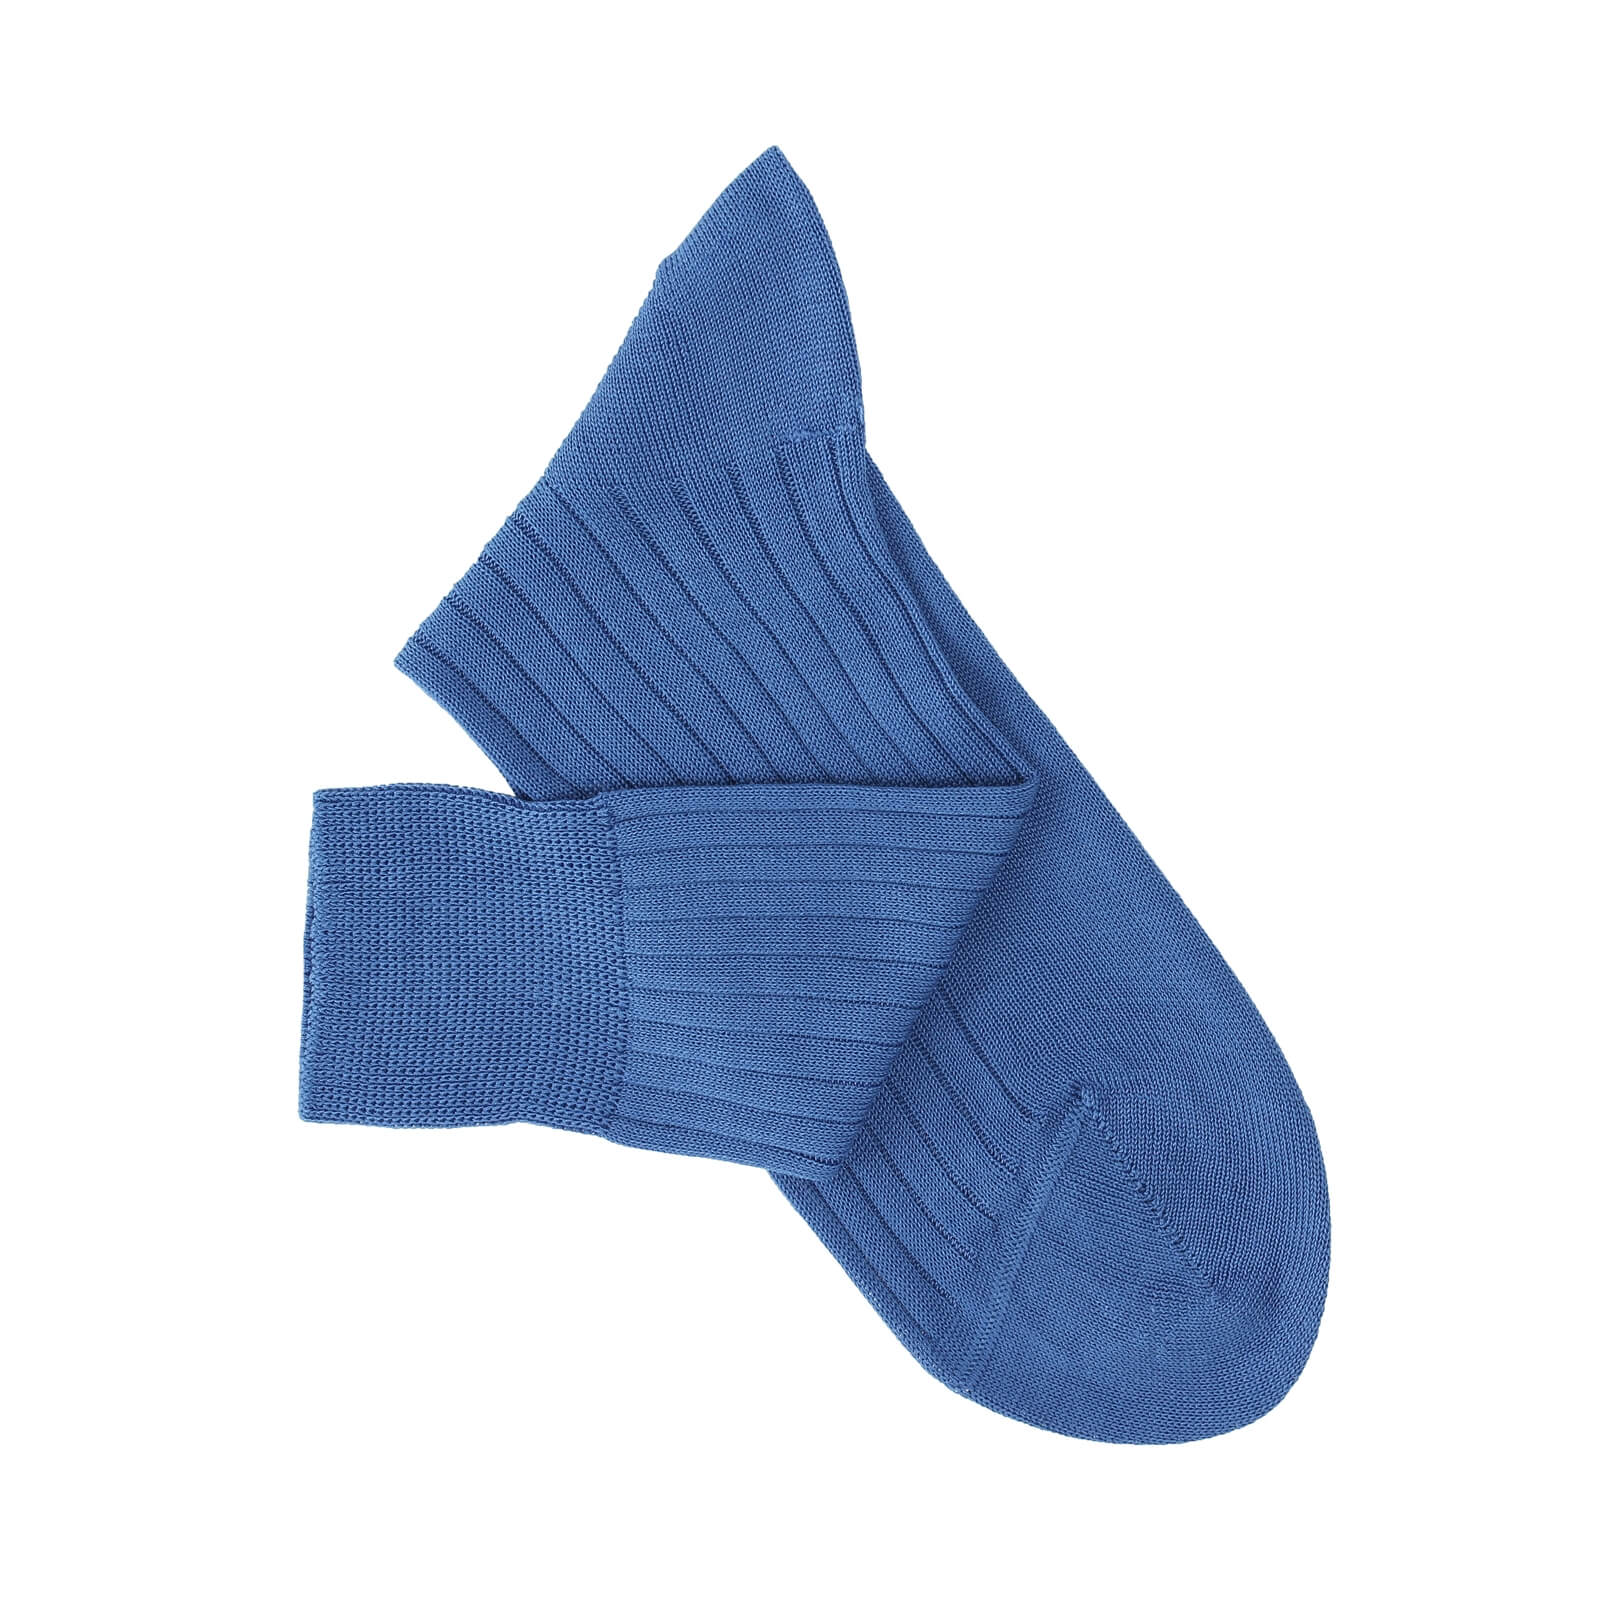 Monsieur Chaussure Basic Sky Blue Lisle Socks For Men